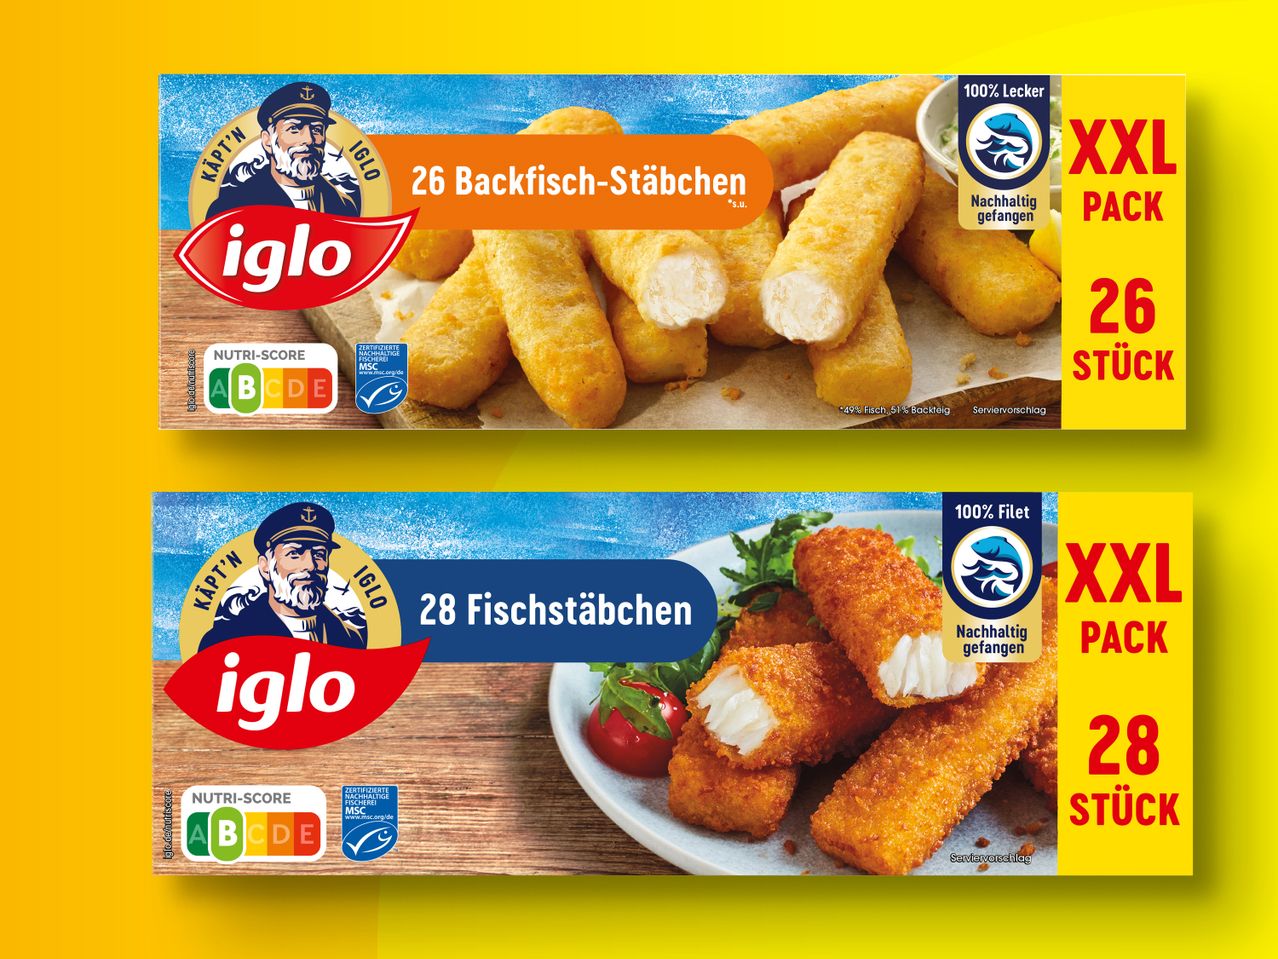 Iglo Fisch-/Backfisch-Stäbchen